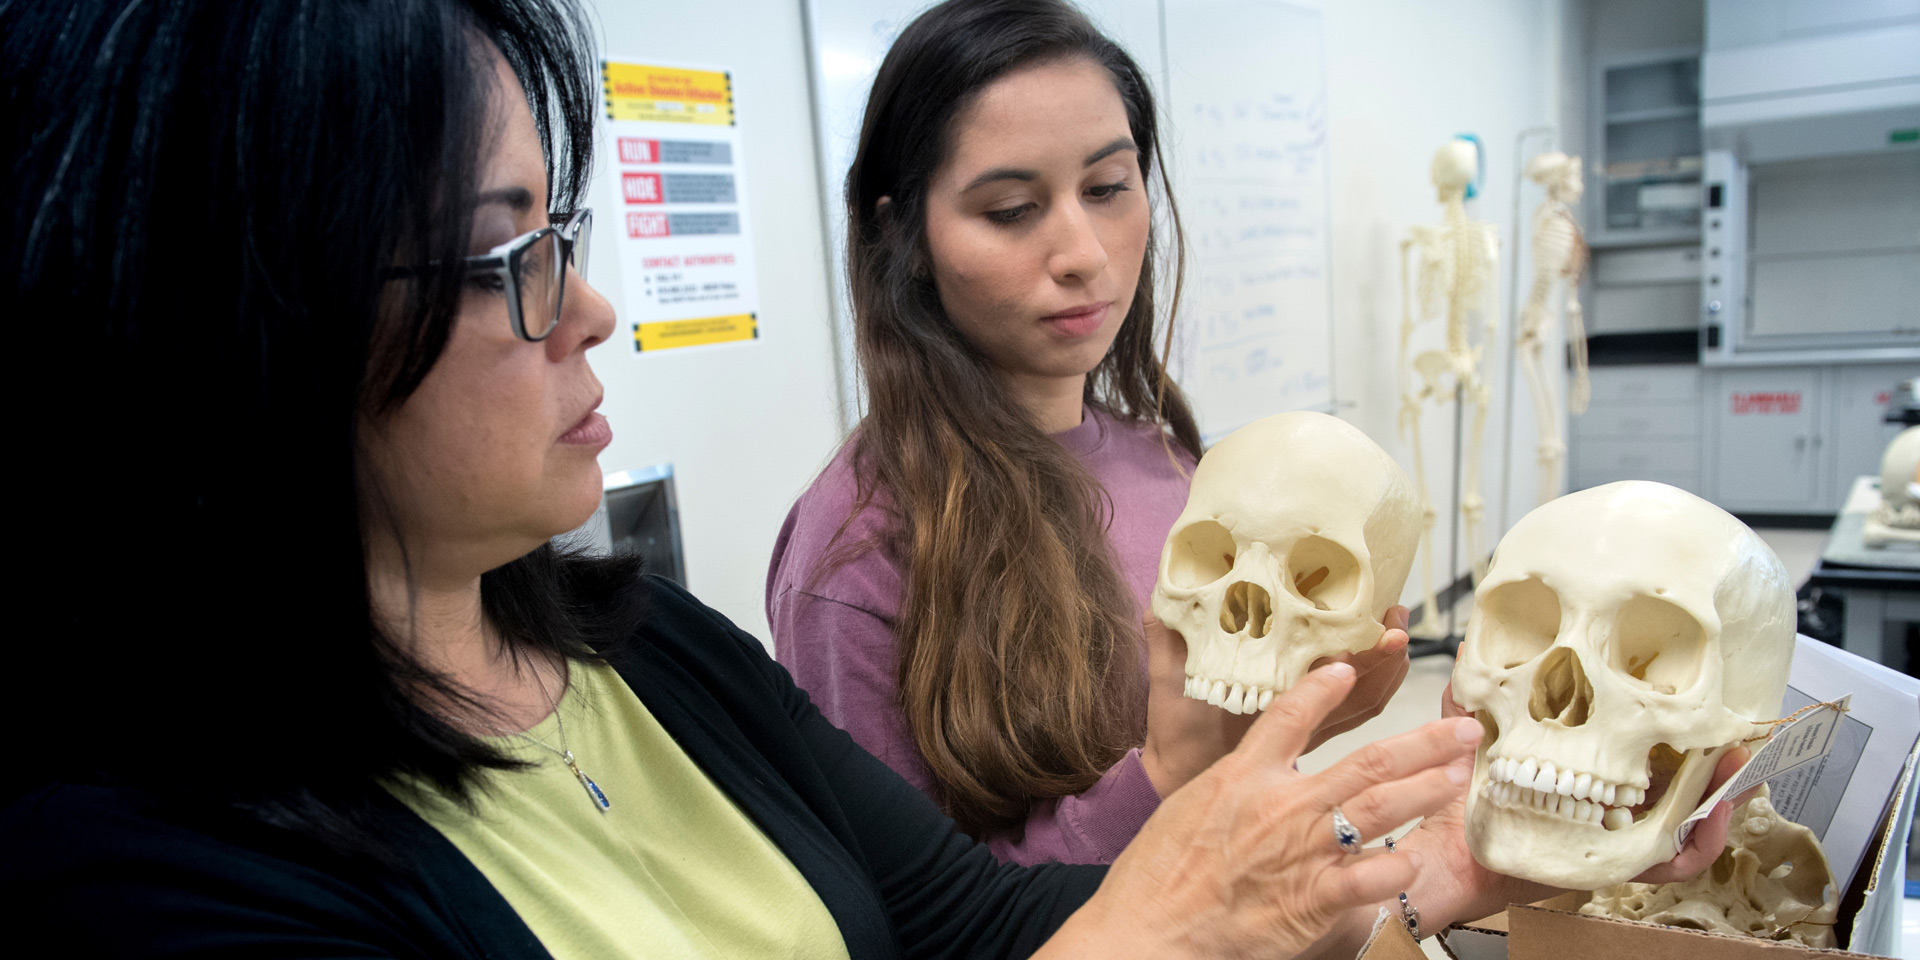 A professor and a student examining human skulls